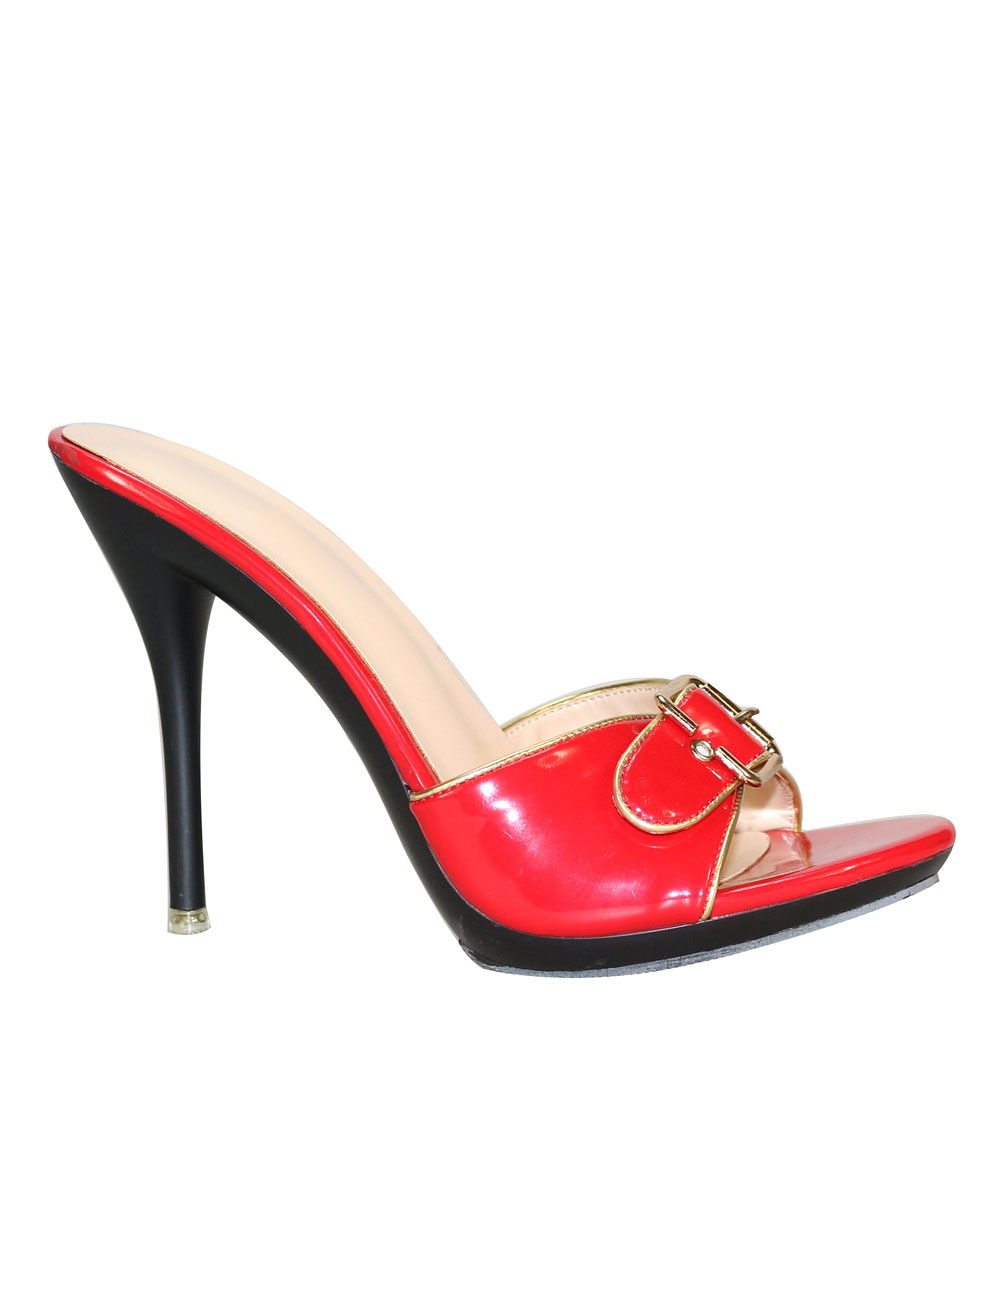 Chaussures Chaussures femme | Mules femme sandales femme talon haut - NL65427